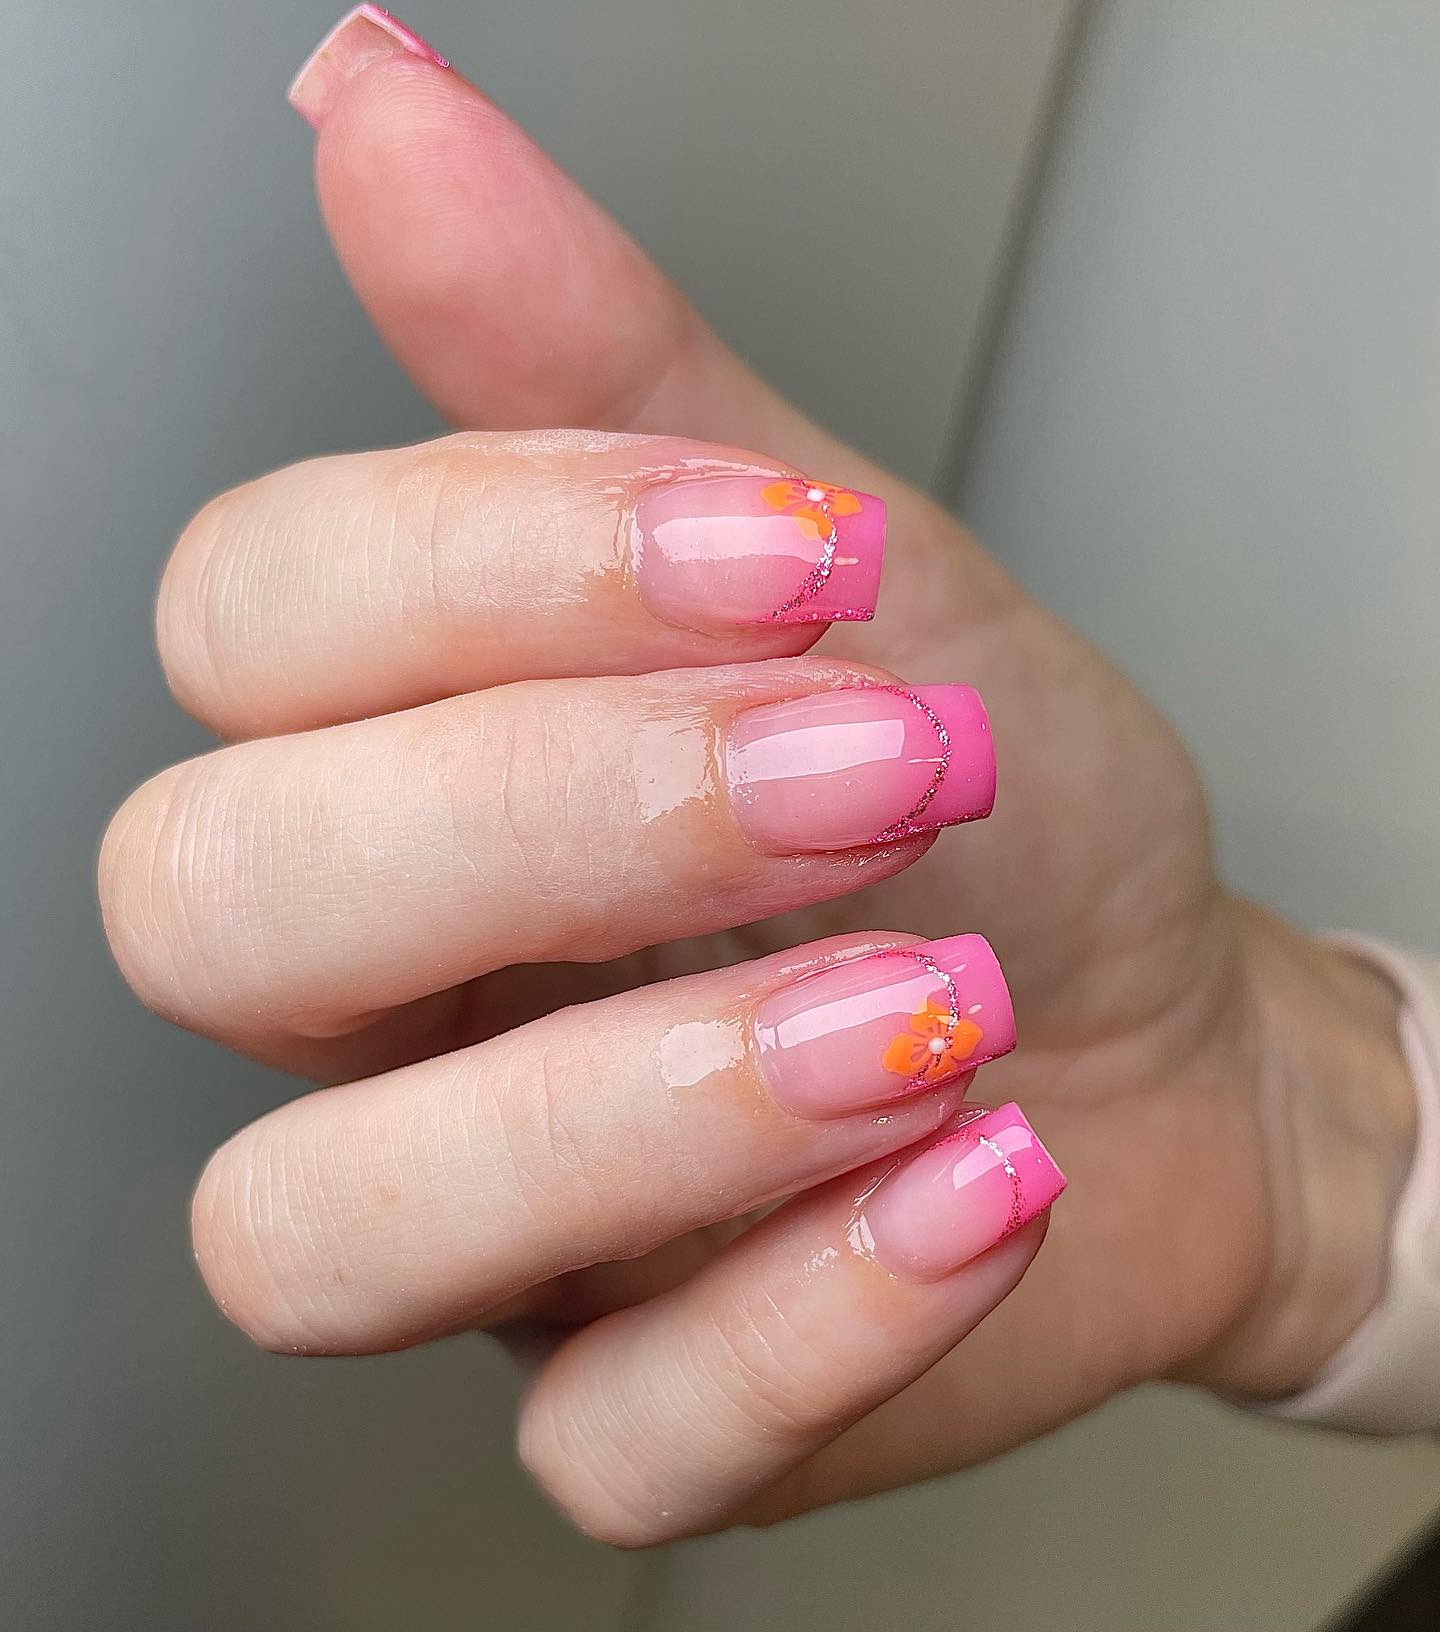 Puntas francesas de color rosa ombre con diseño de uñas floral naranja en uñas cuadradas medianas